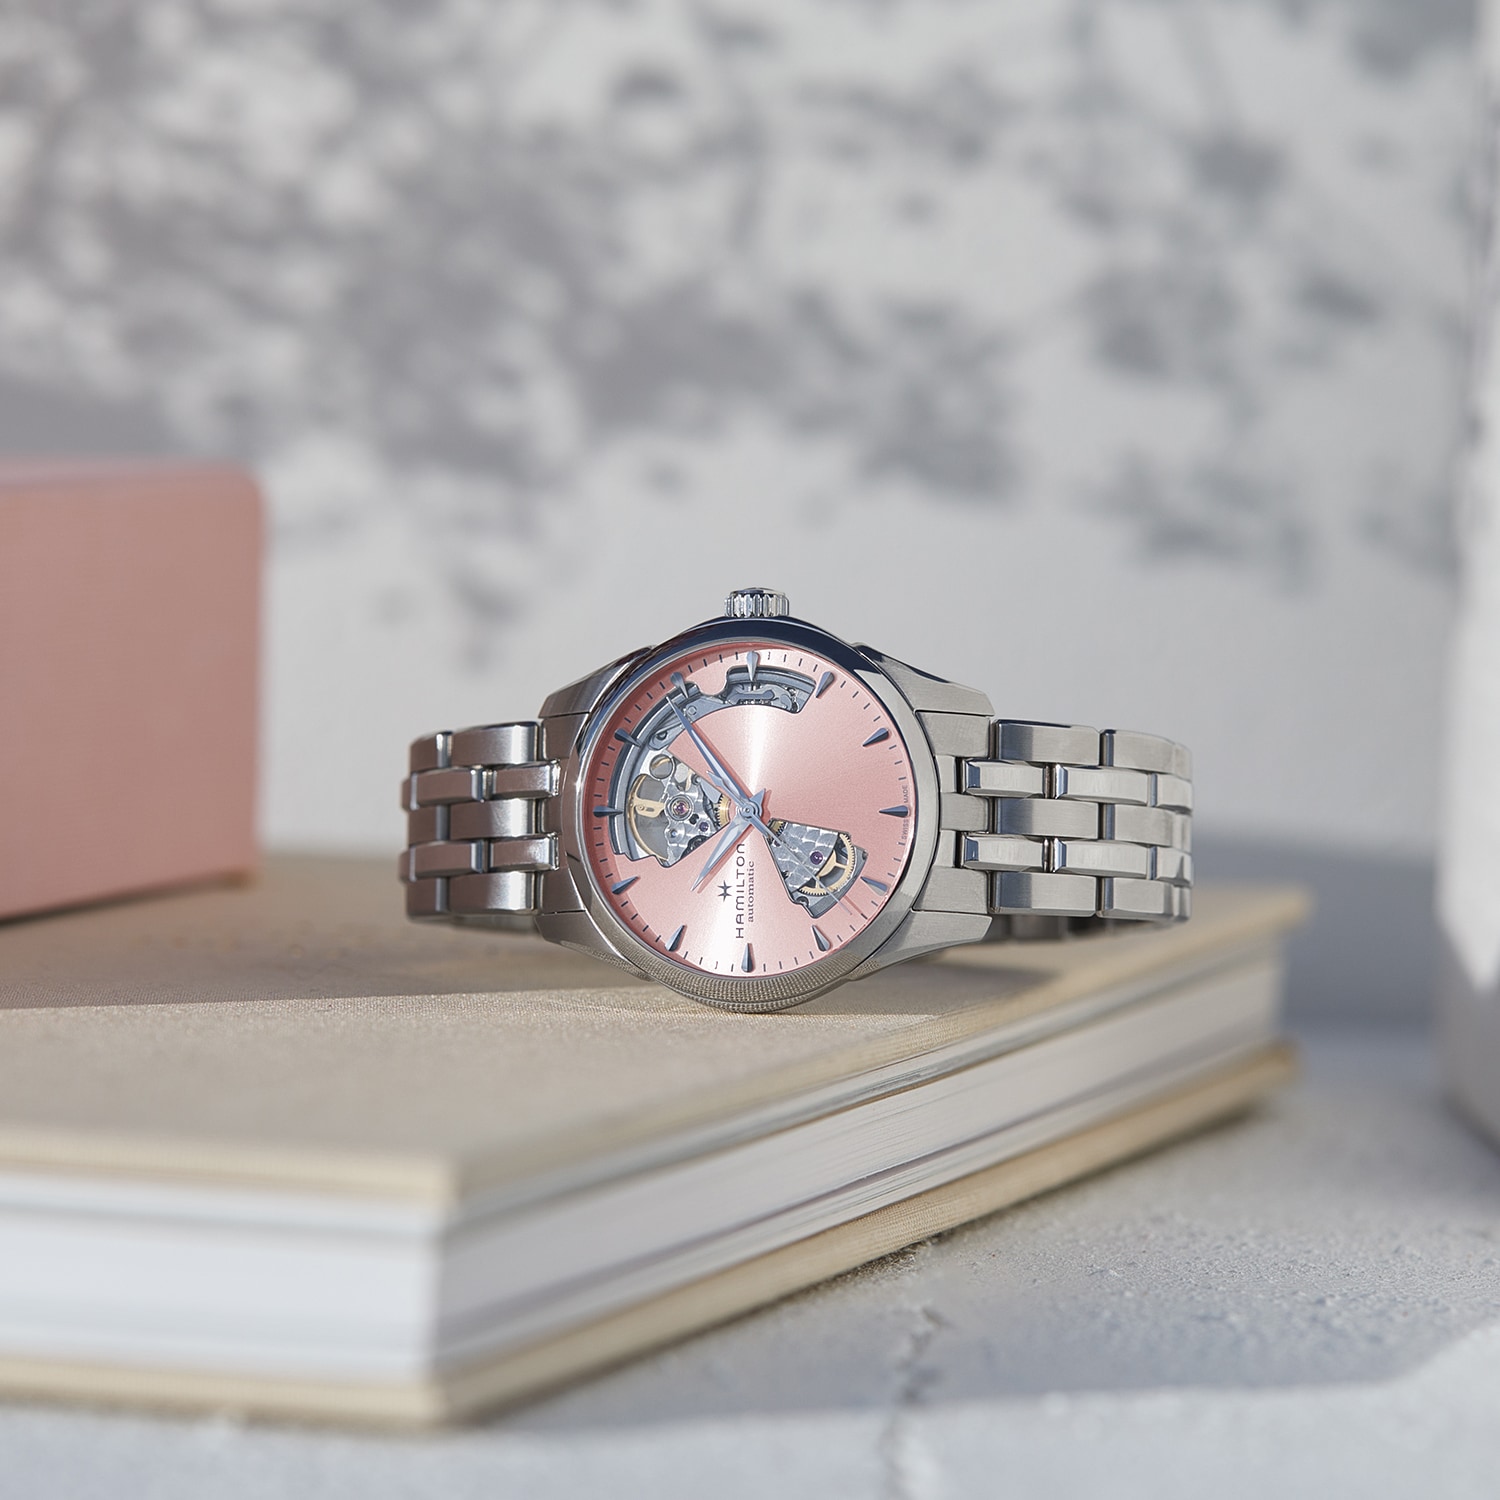 春意盎然的精選粉紅色腕錶令人煥然一新